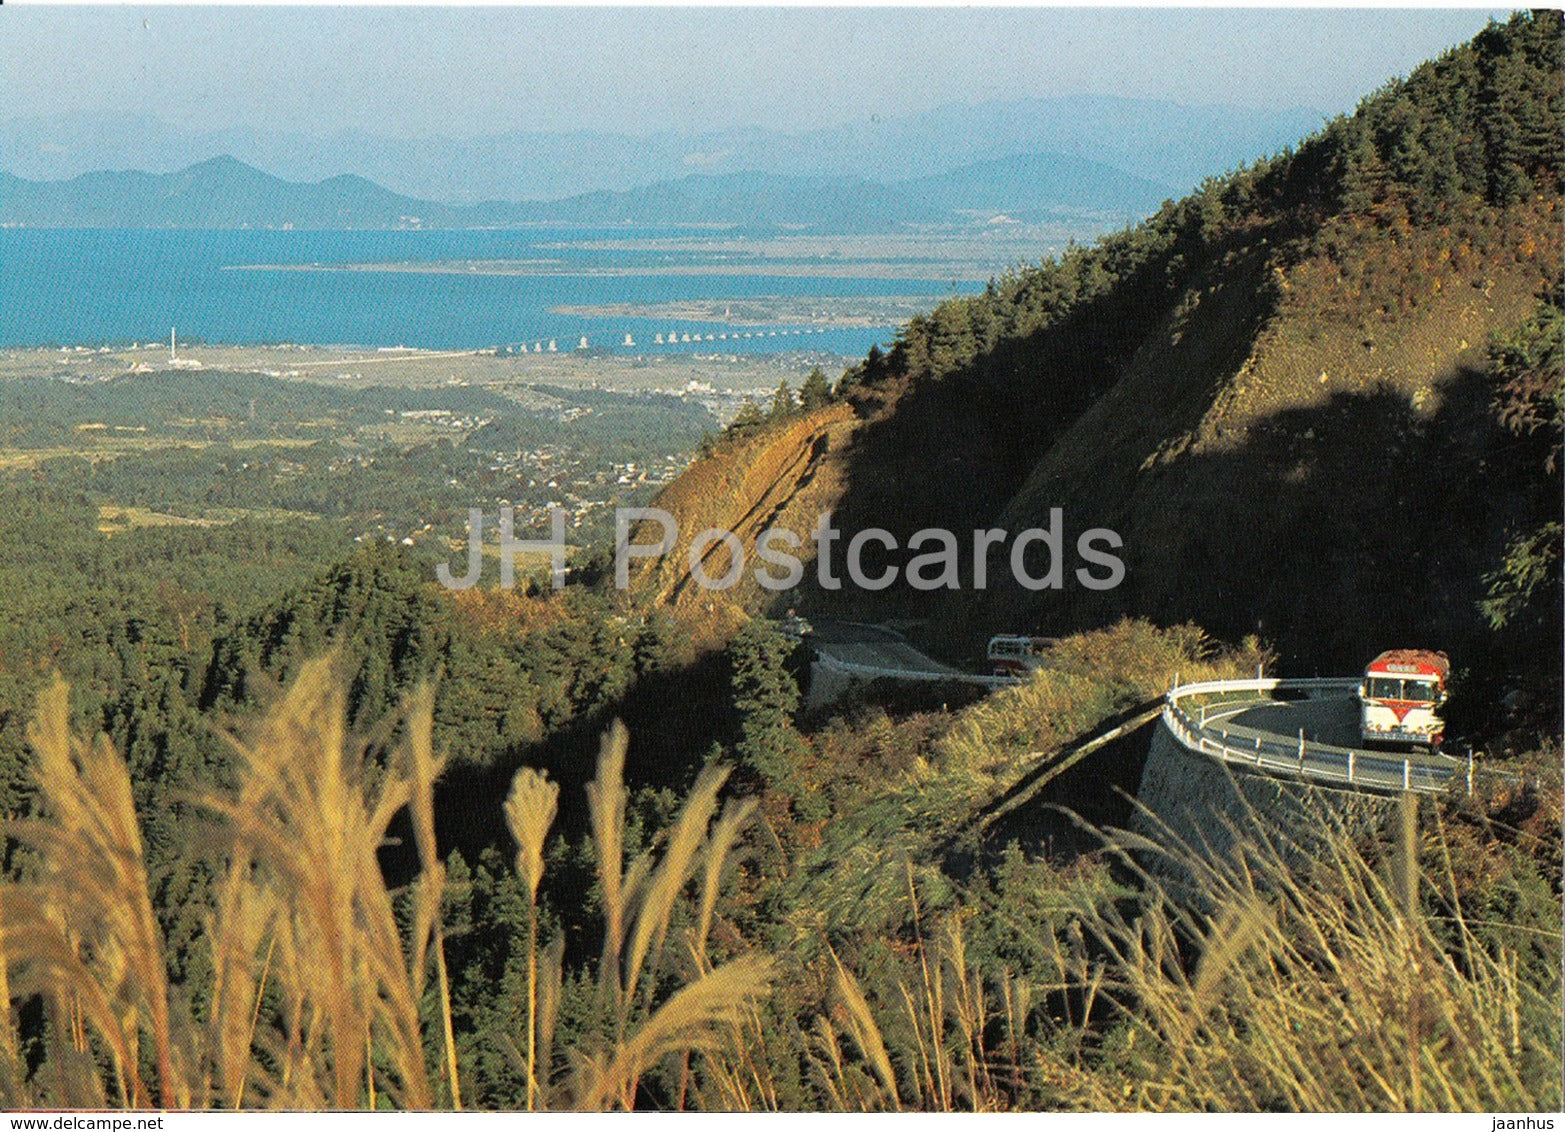 Kyoto - Mt Hiei Drive Way - bus - Japan - unused - JH Postcards